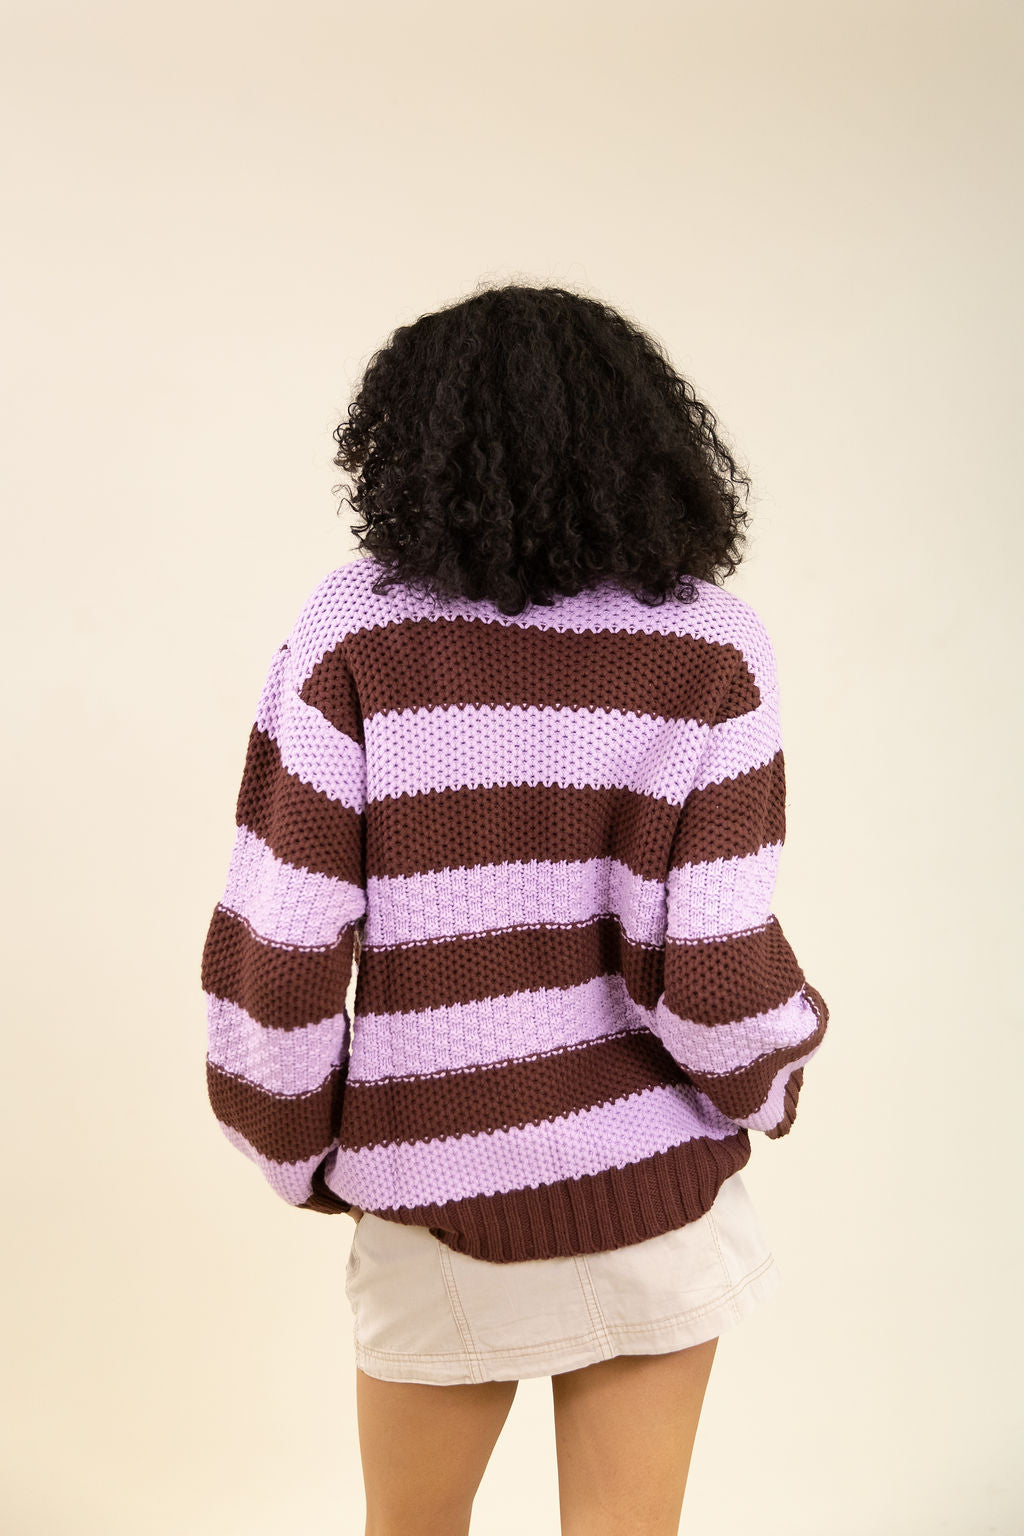 Stay Classy Striped Crochet Sweater